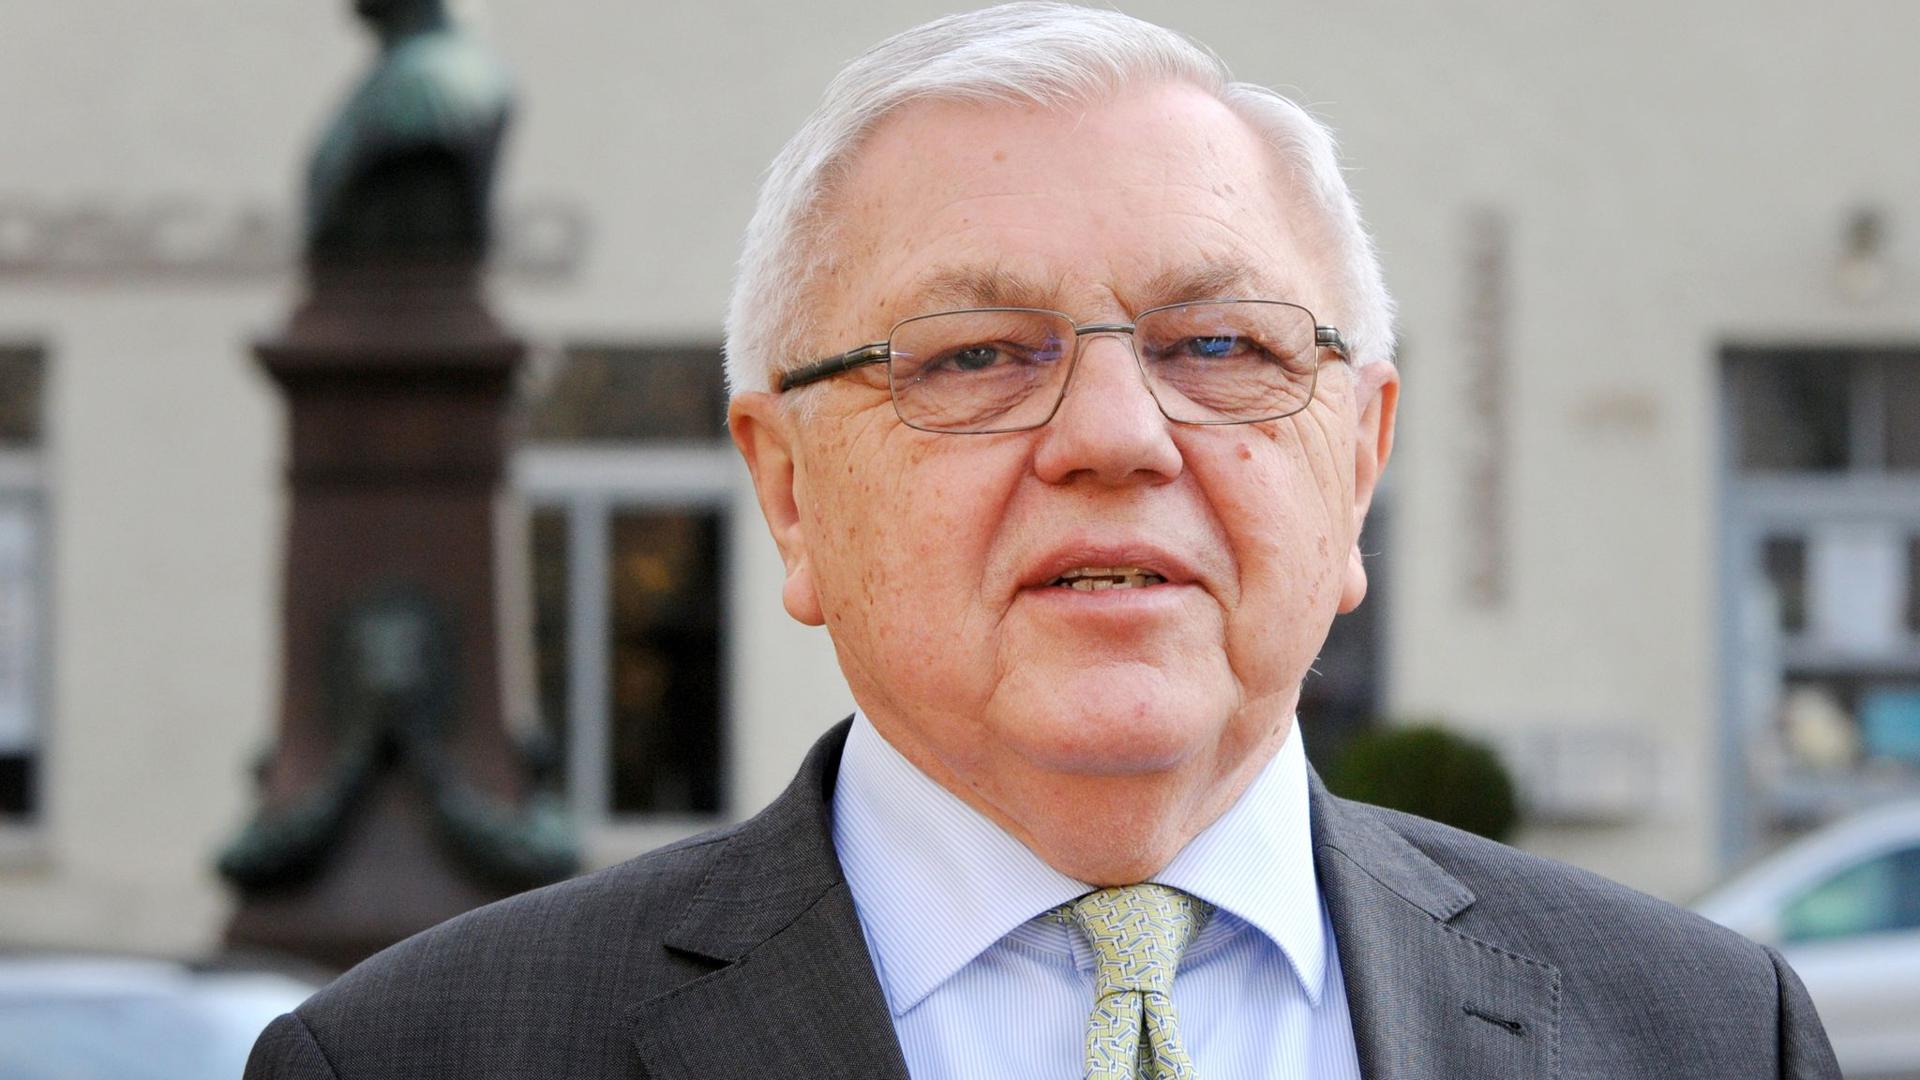 Der frühere Generalinspekteur der Bundeswehr, Harald Kujat, tritt als Aufsichtsratsvorsitzender von Heckler & Koch zurück.